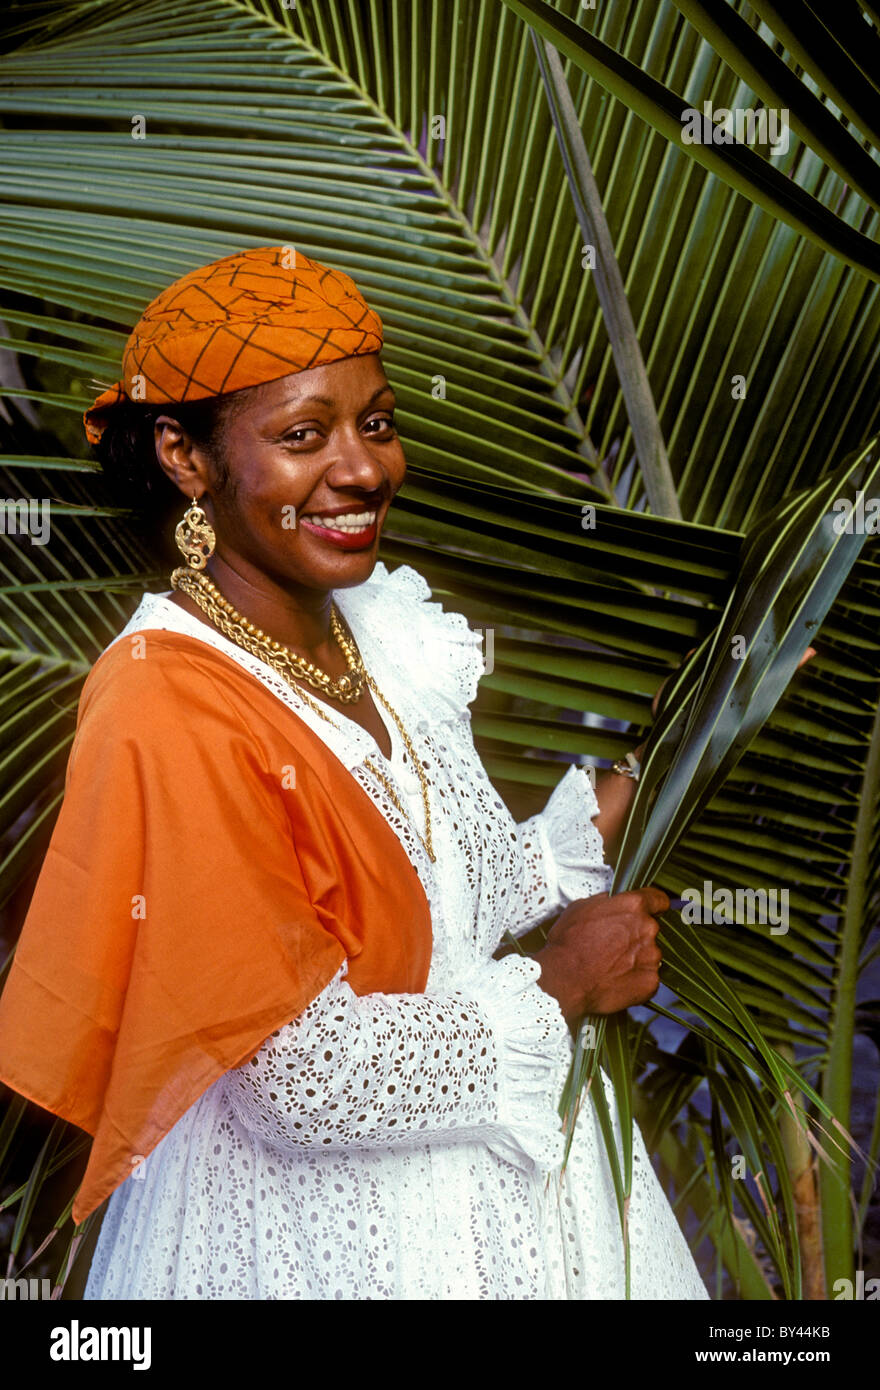 1, l'une, femme, Lucienne Salcede, célèbre chef cuisinier, chef de cuisine, cuisinier, la plage de Grande Anse, plage, Deshaies, Basse-Terre, Guadeloupe, île de Basse-Terre Banque D'Images